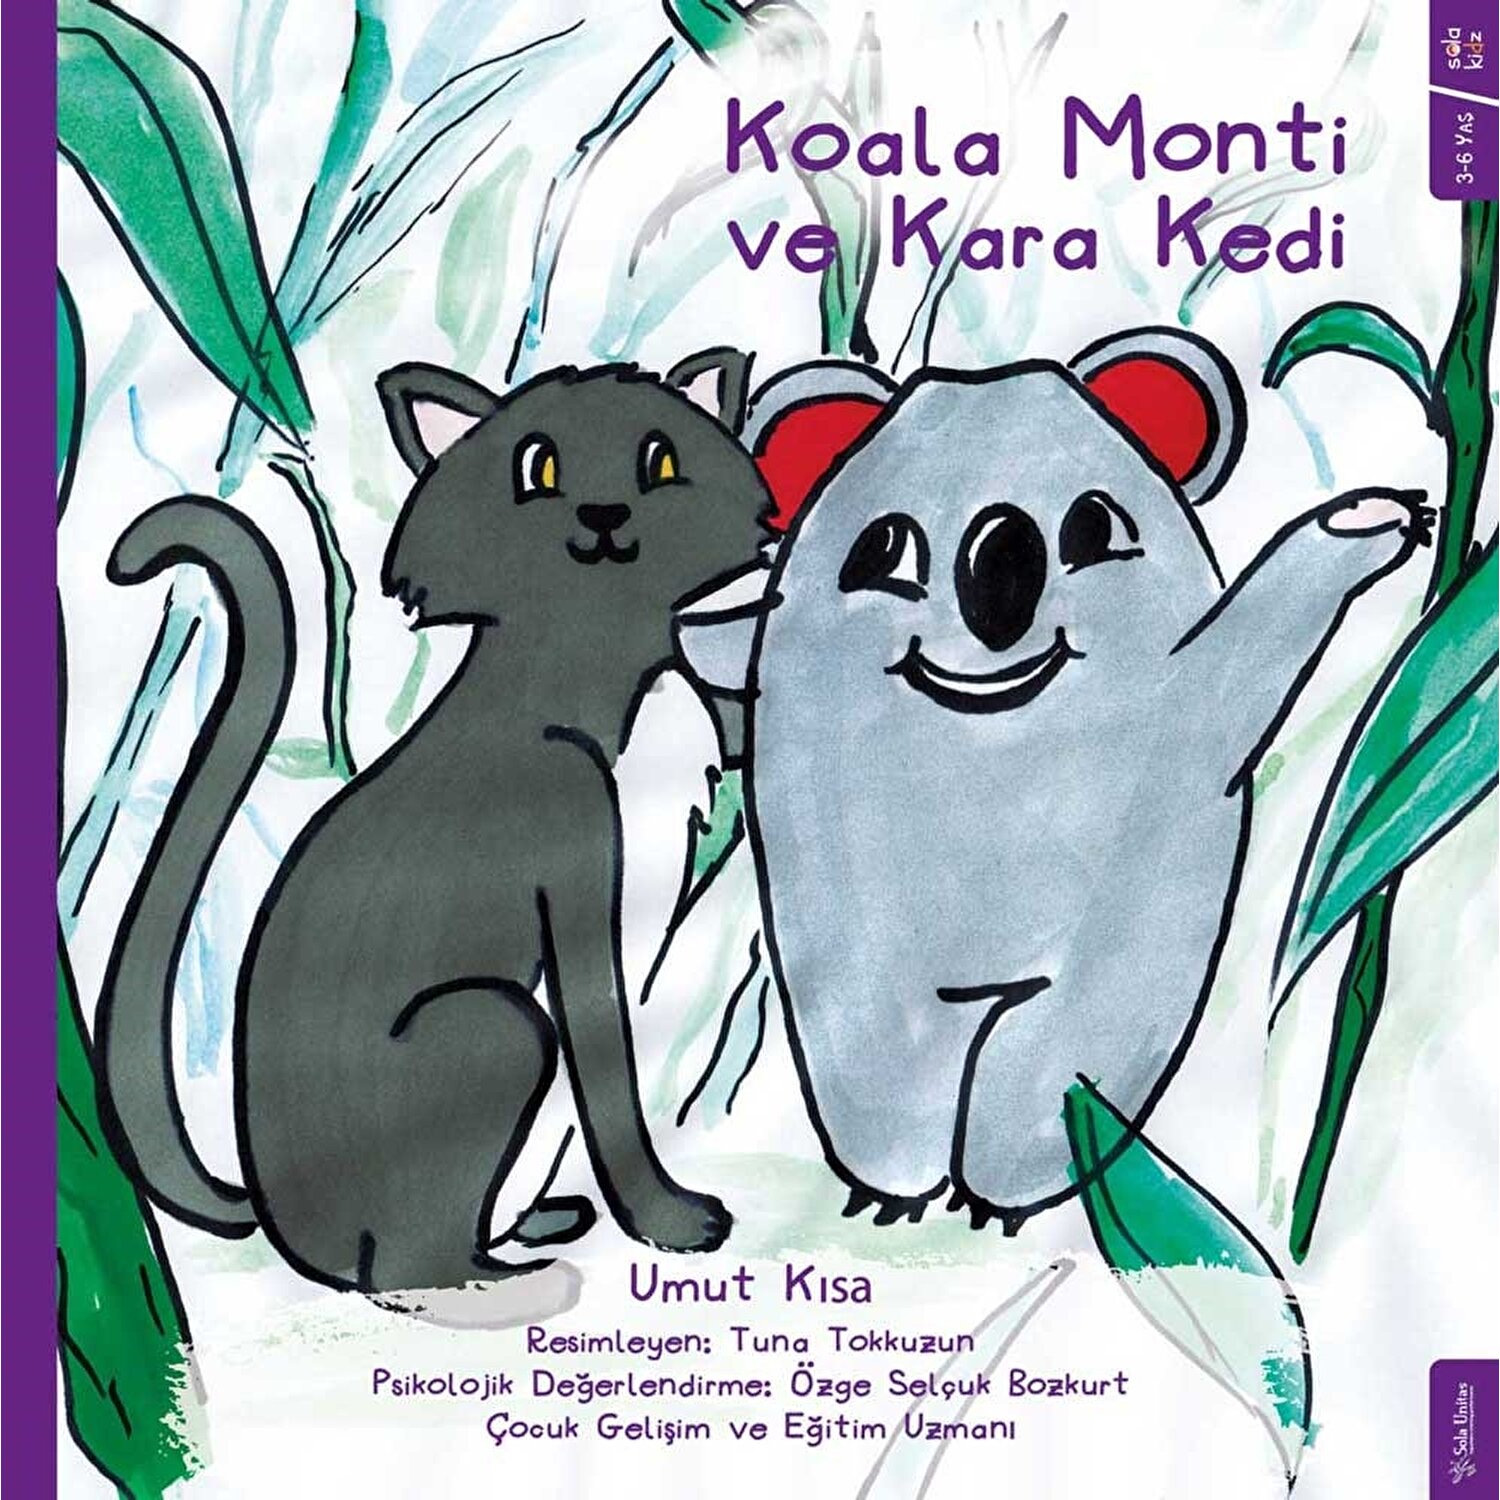 Koala Monti Ve Kara Kedi Umut Kısa Kitabı ve Fiyatı